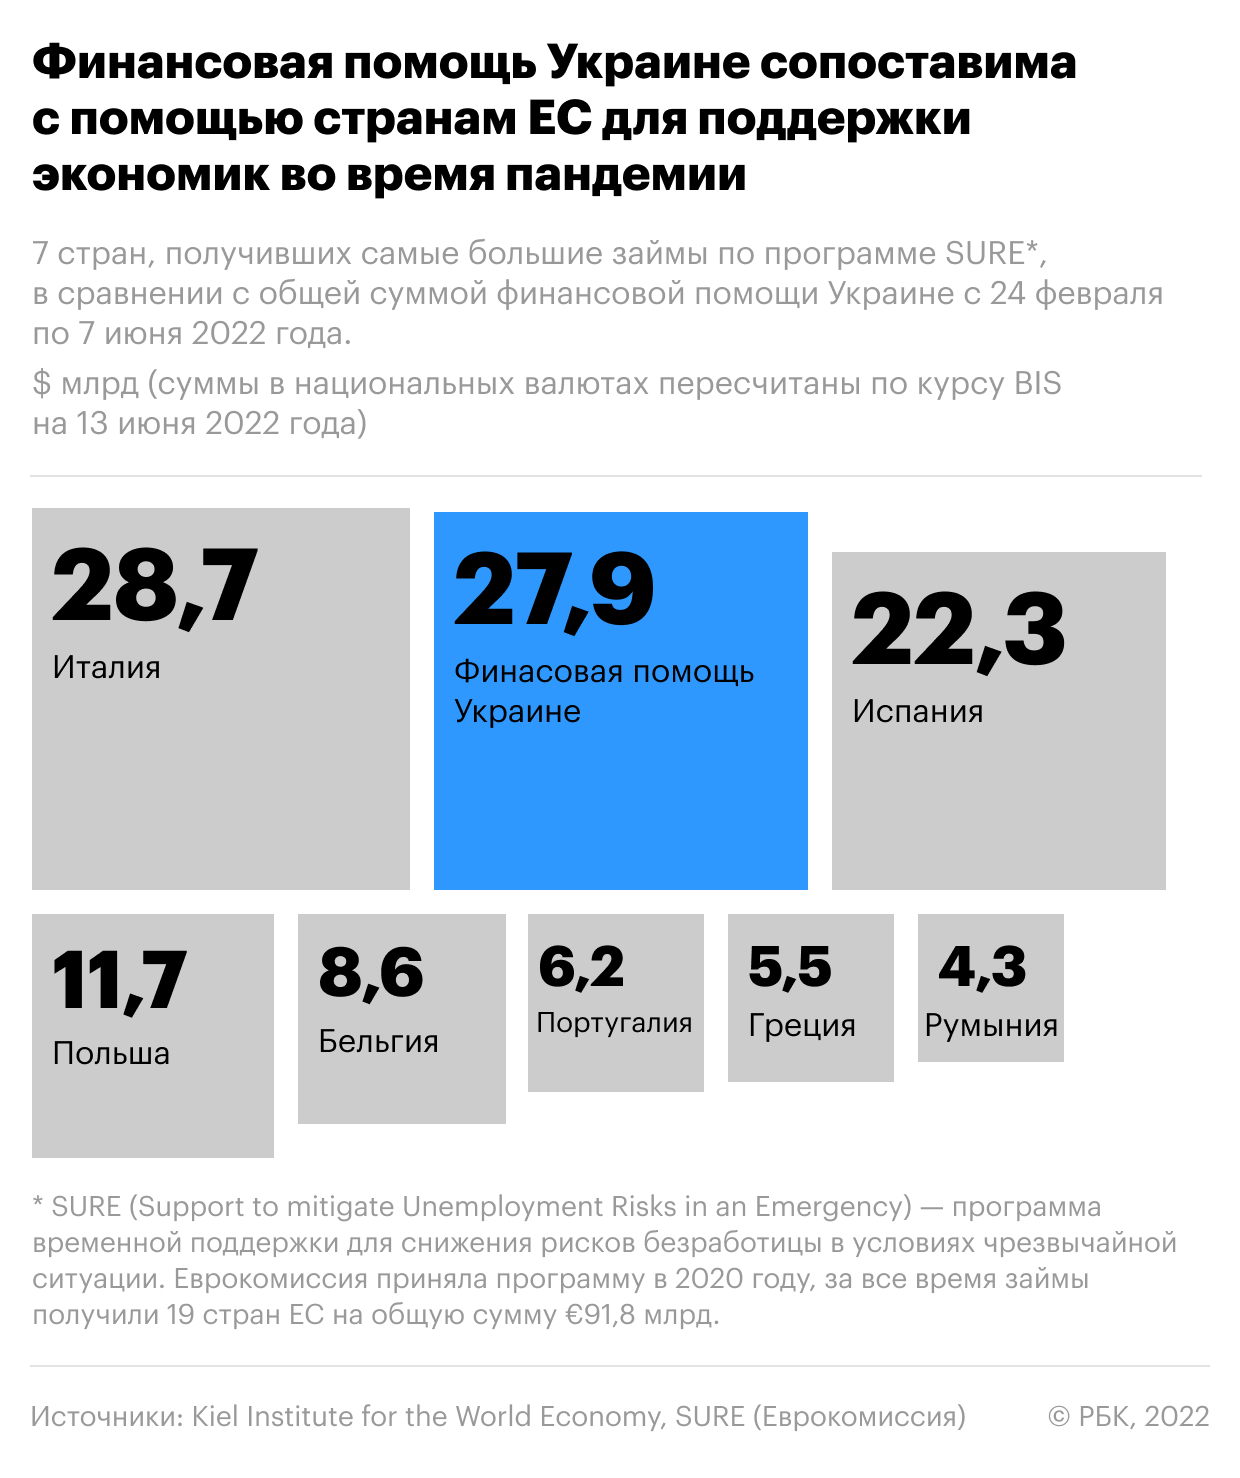 Помощь Украине превысила в 1,6 раза доходы ее бюджета за год